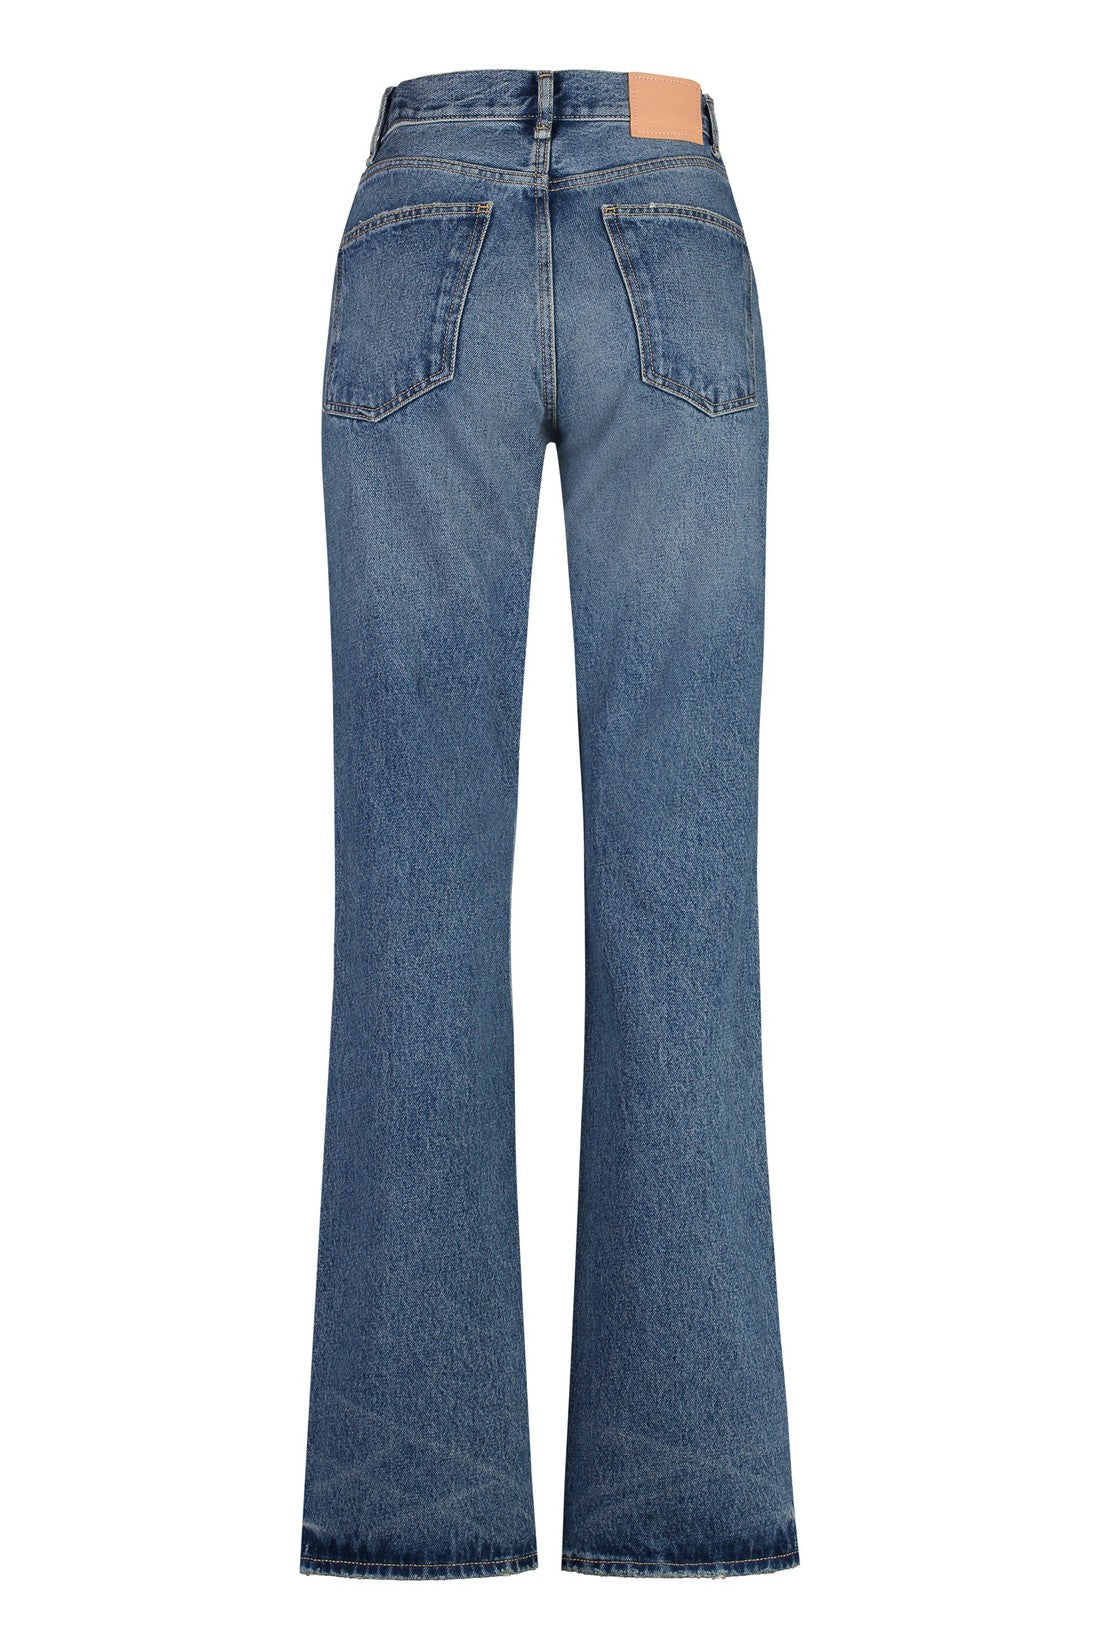 Acne Studios-OUTLET-SALE-1977 regular fit jeans-ARCHIVIST